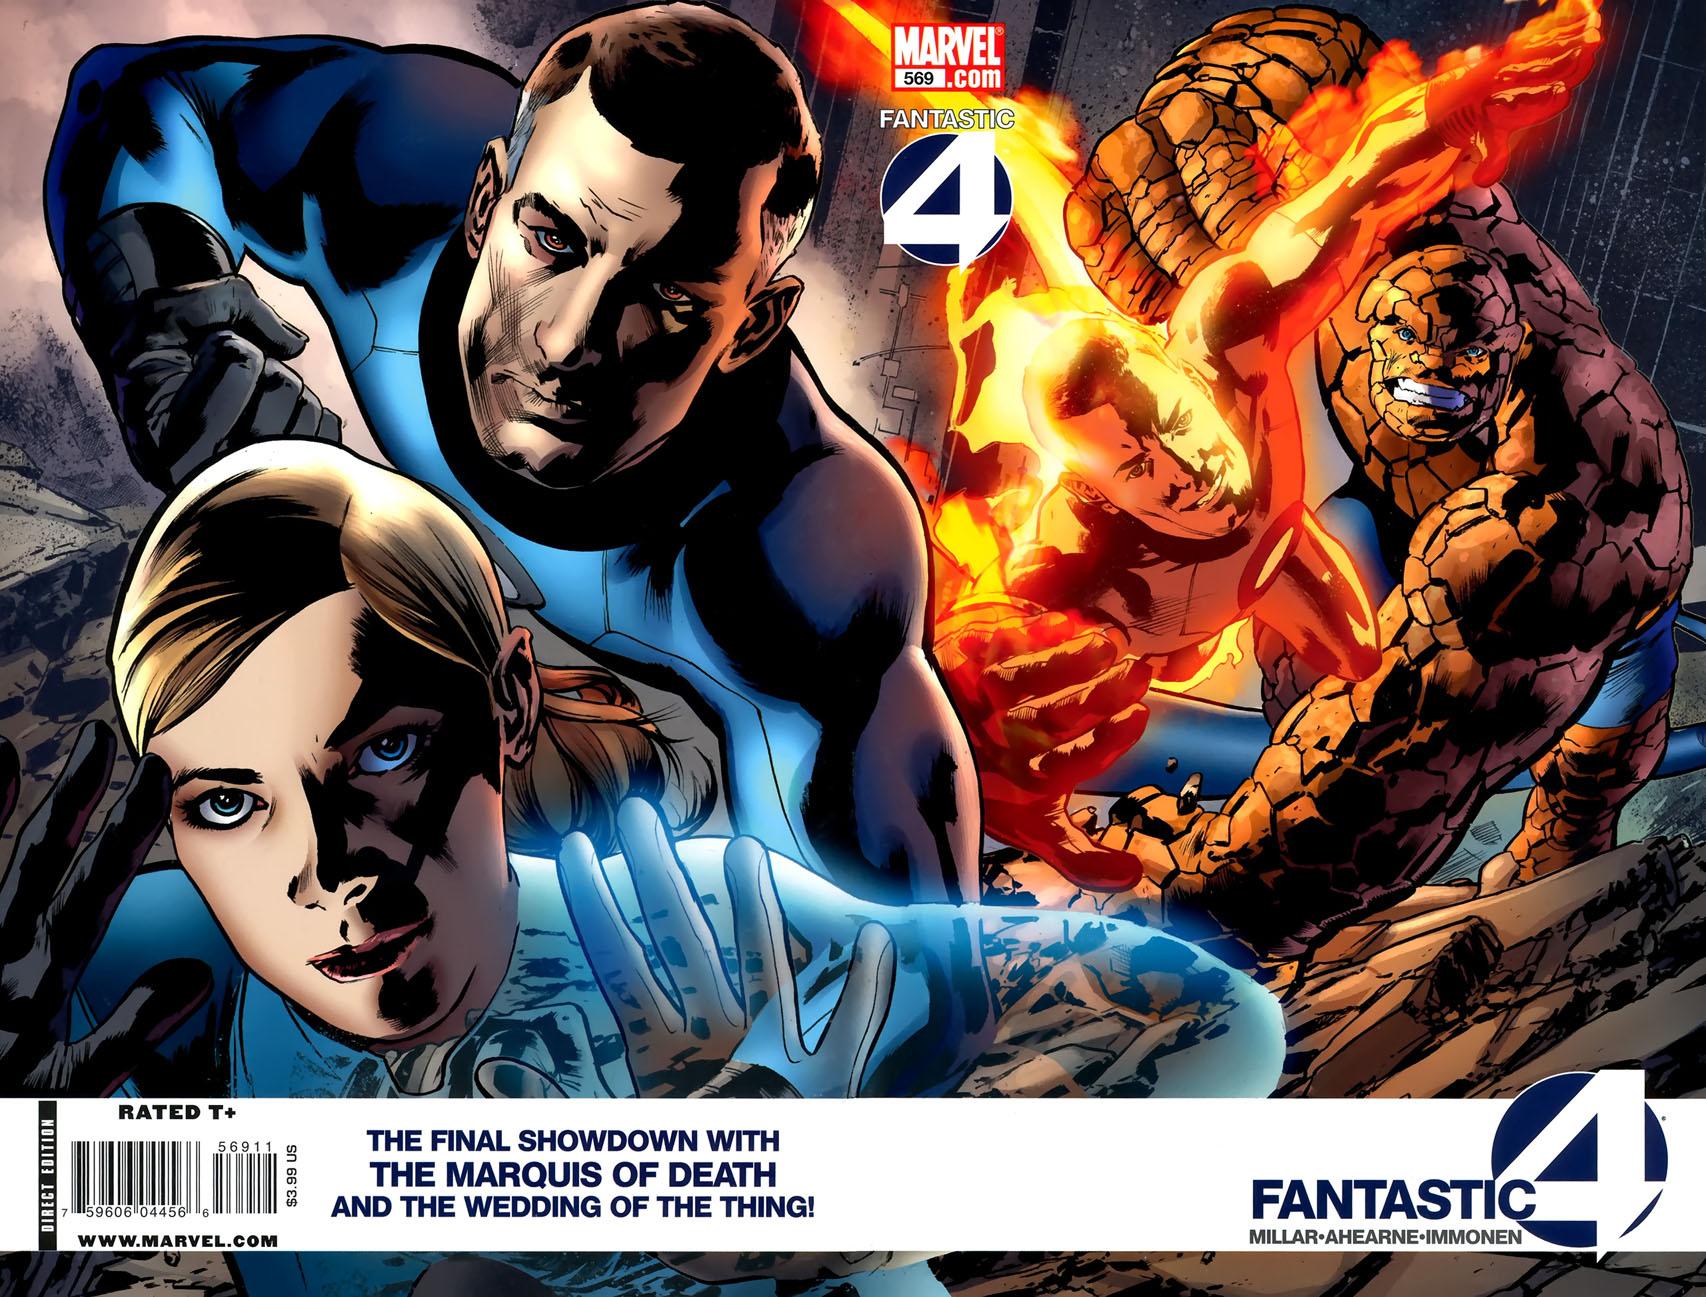 Fantastic Four Vol. 1 #569